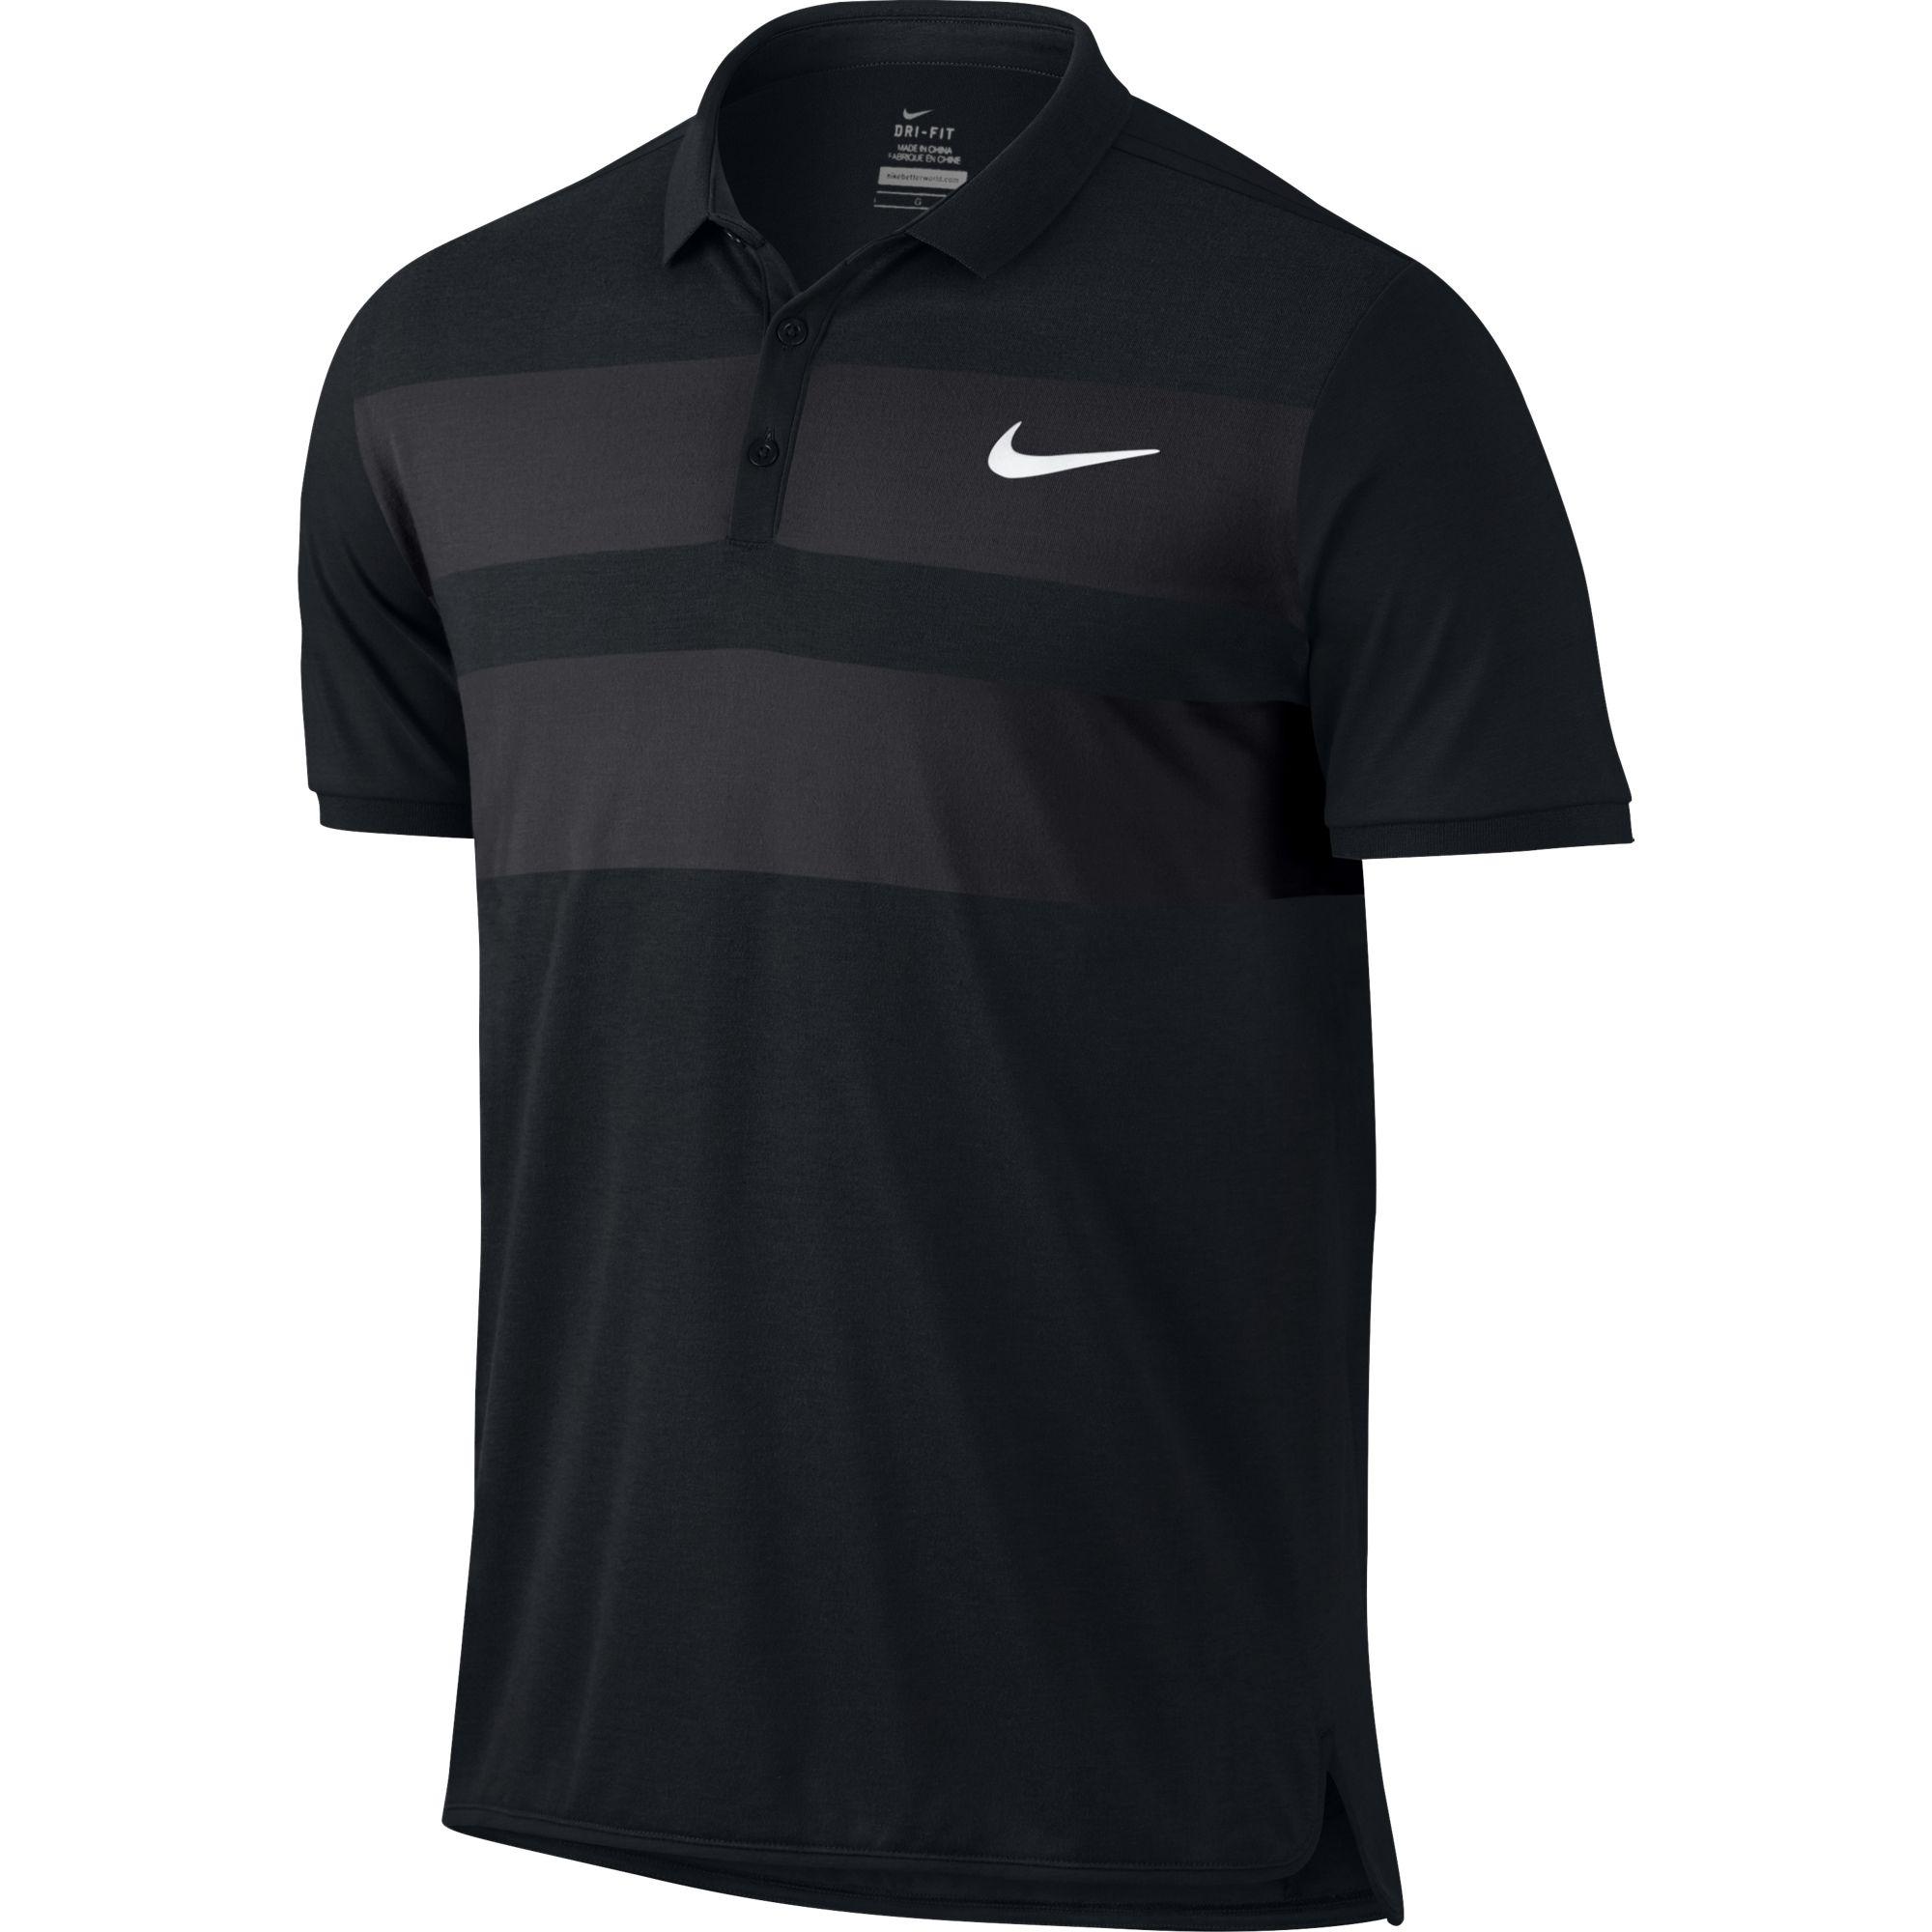 Nike Mens Advantage Cool Polo - Black - Tennisnuts.com